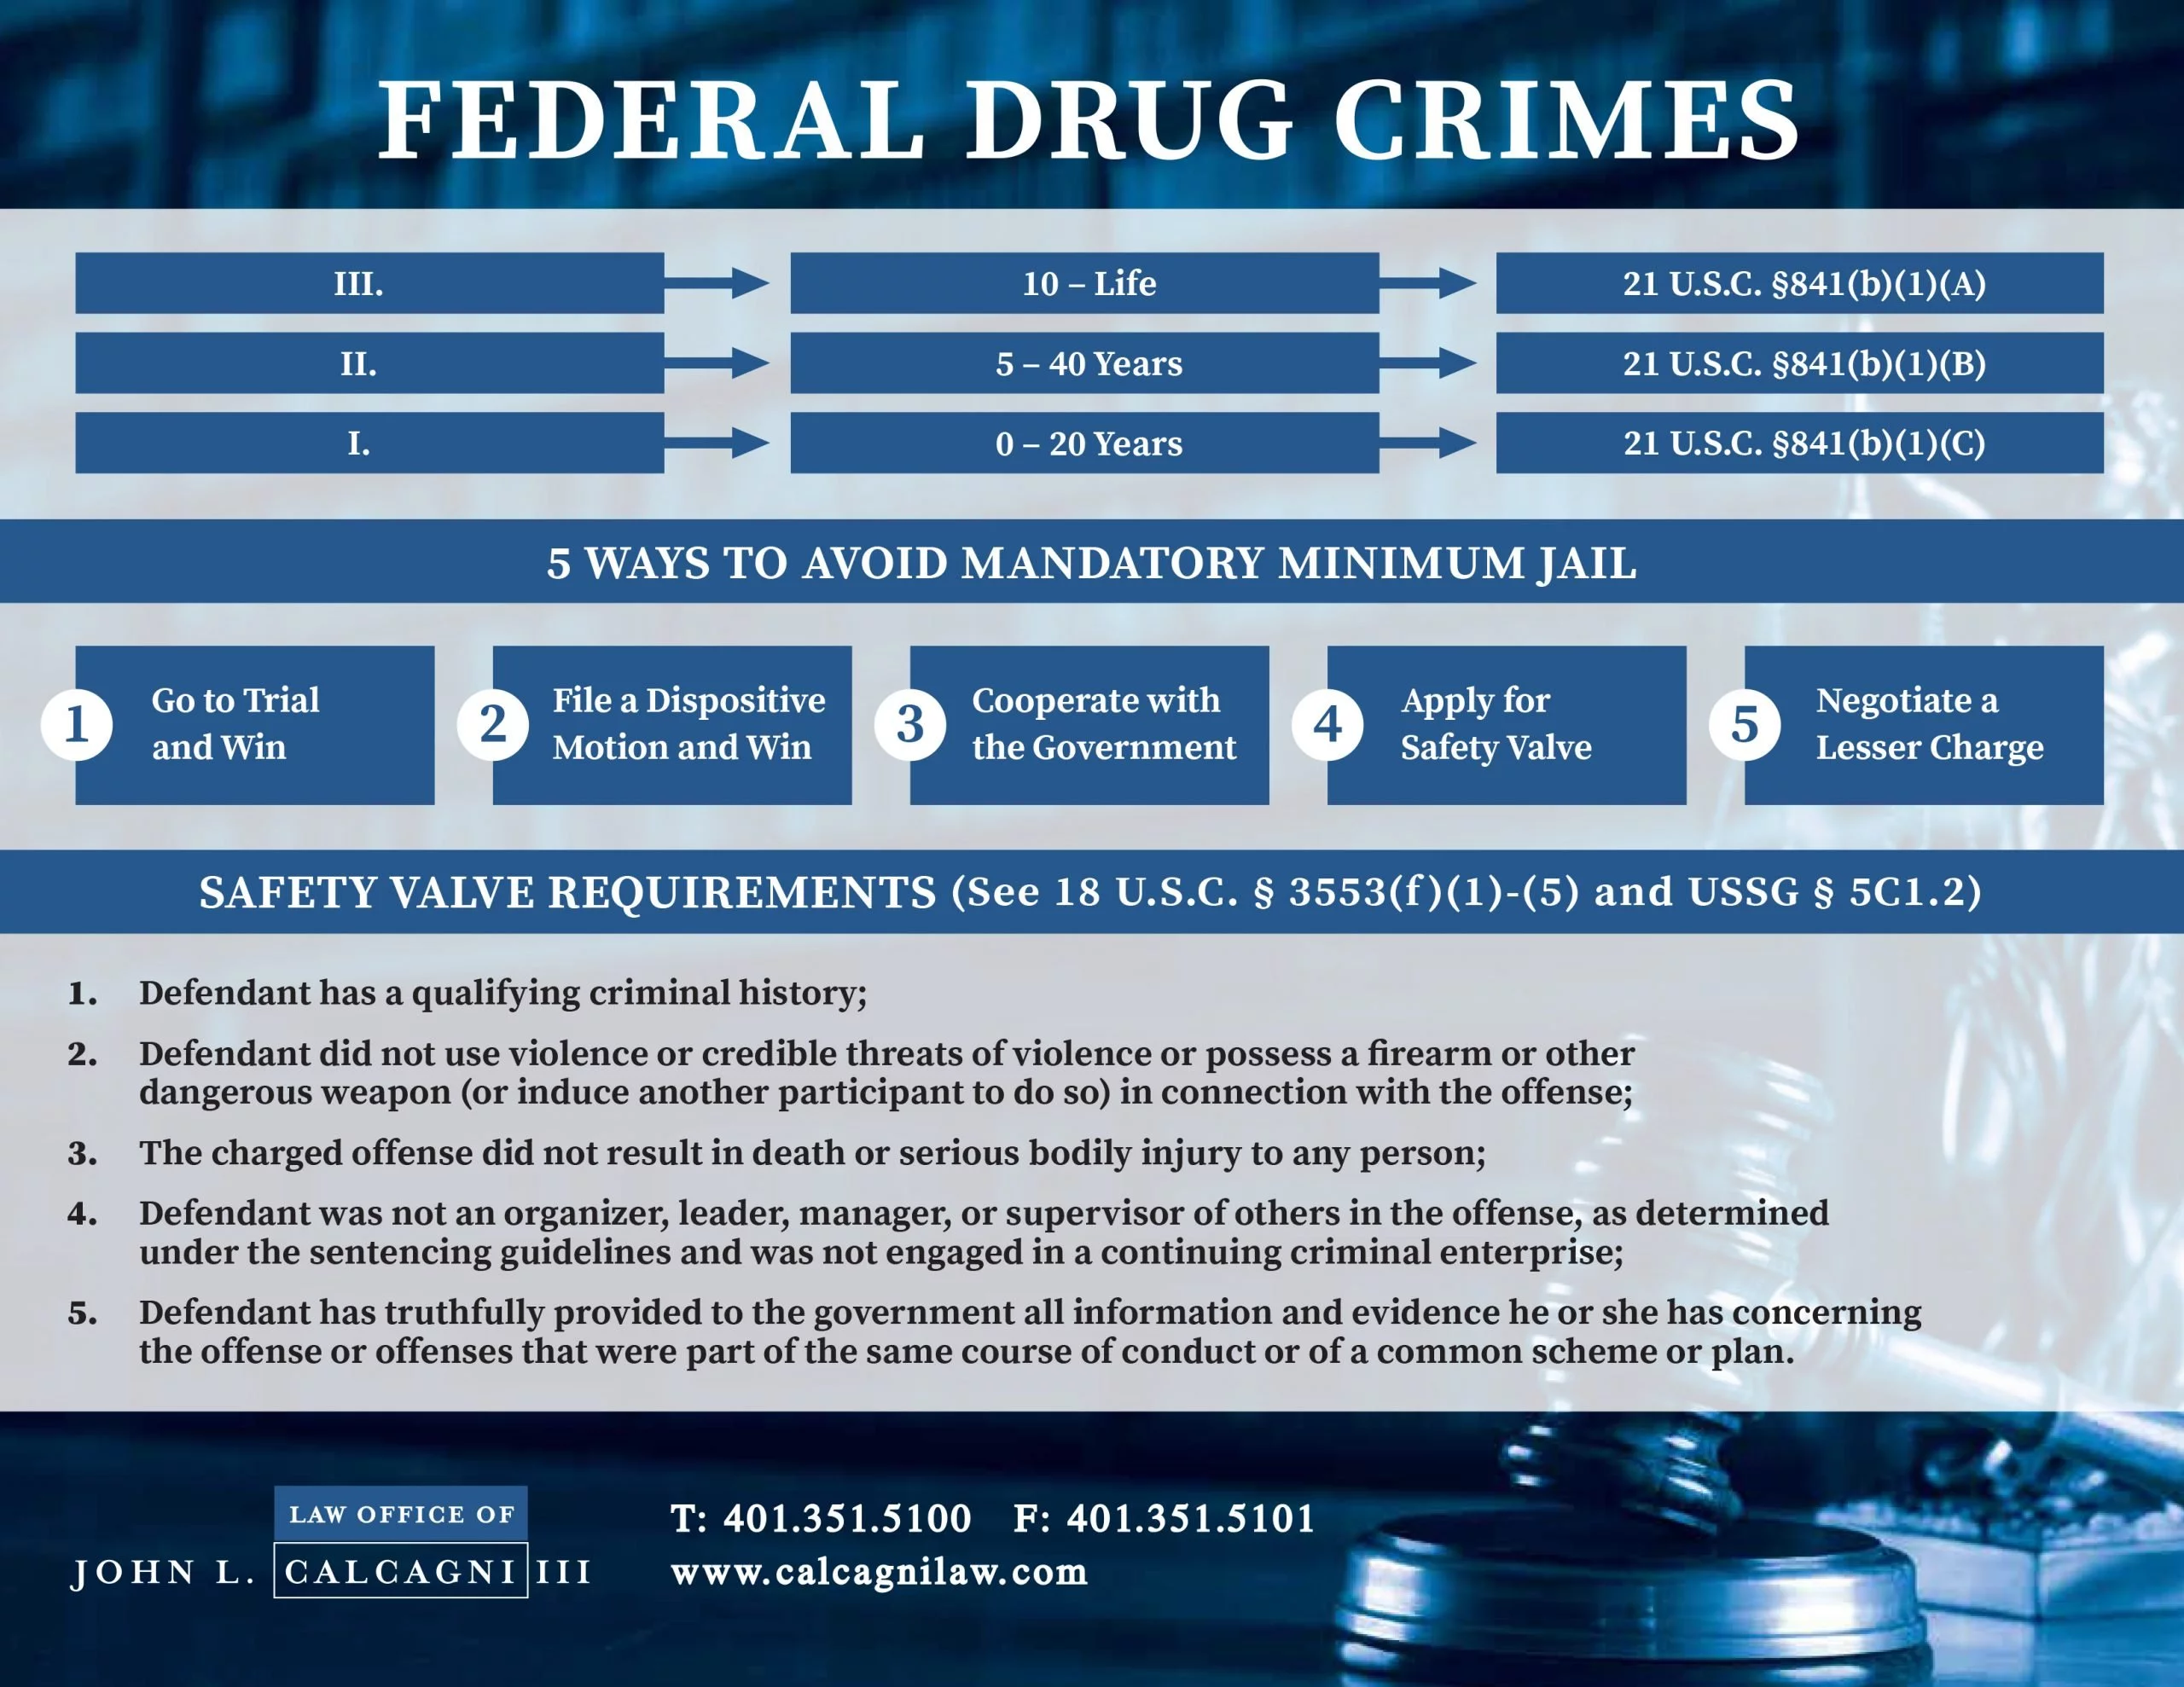 Federal Drug Crime Timeline